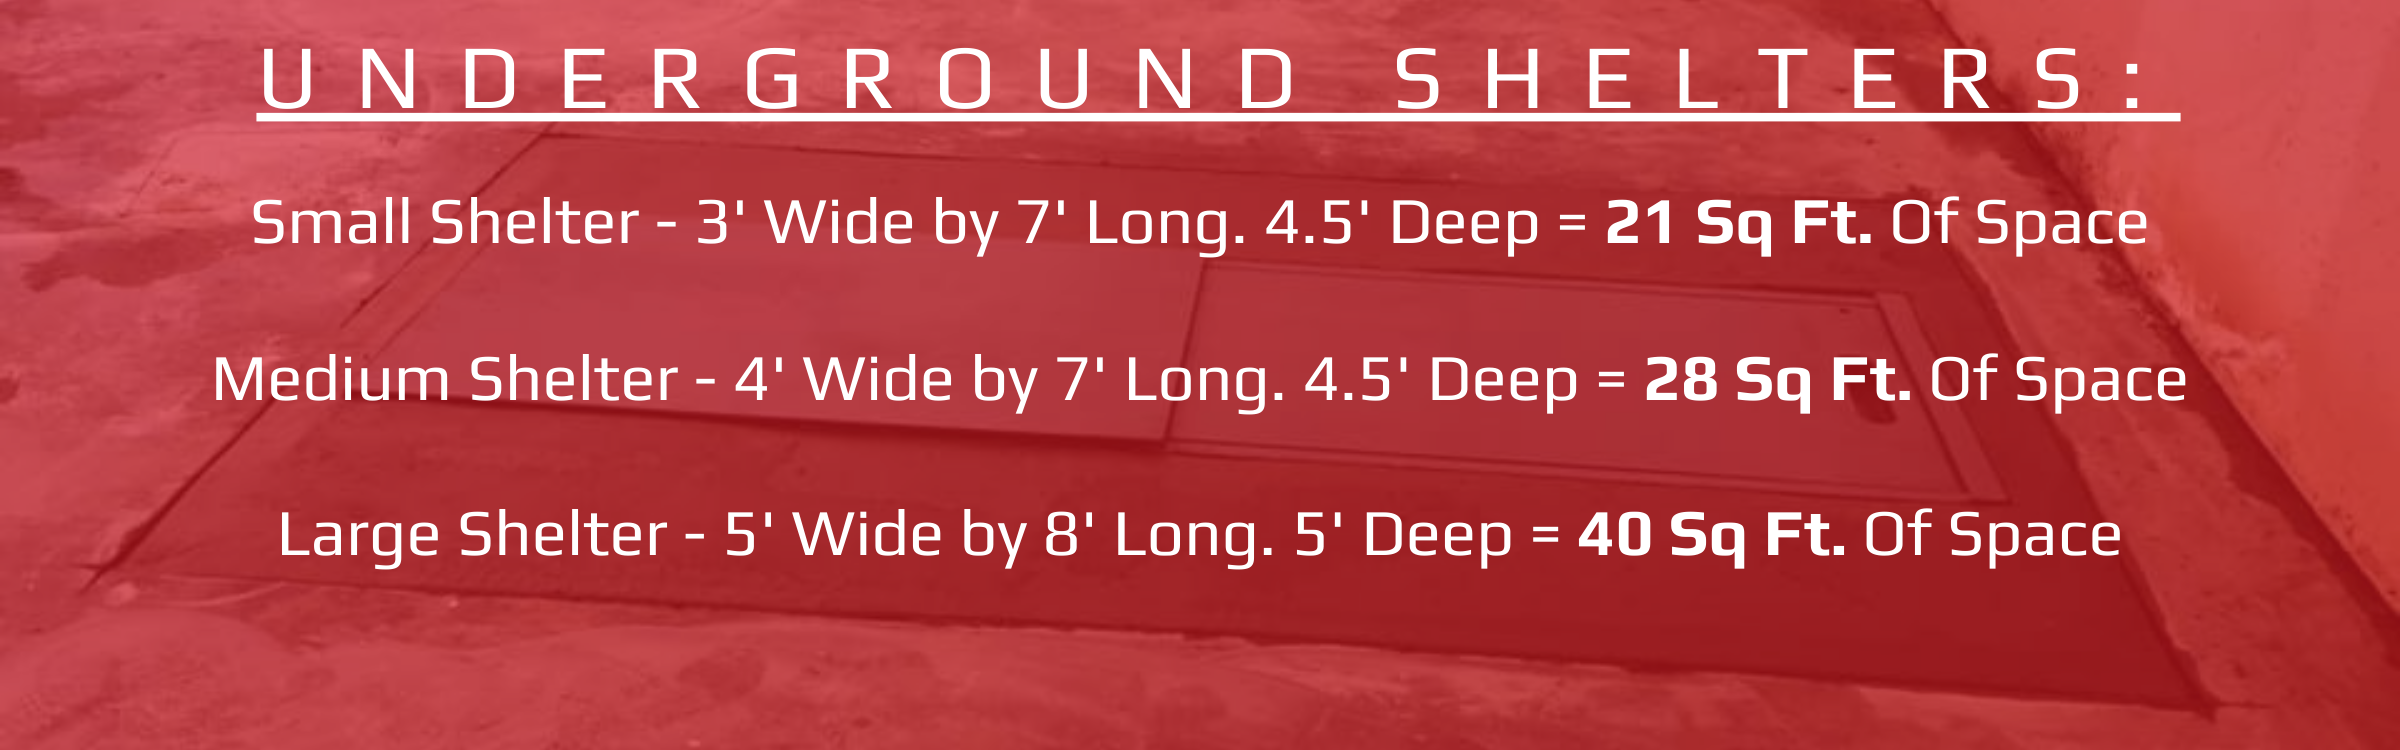 underground storm shelter size chart